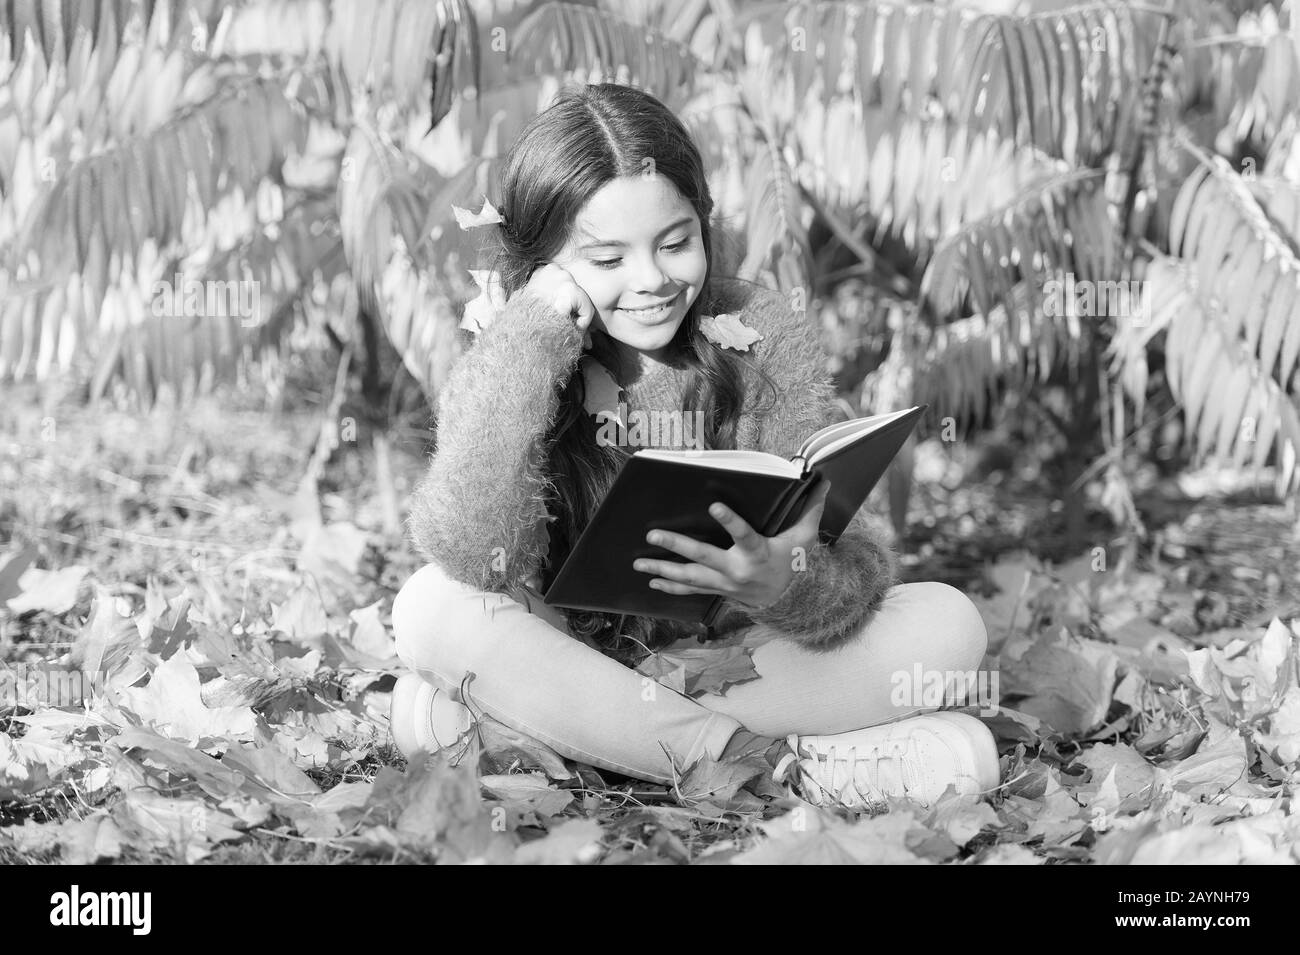 Hobby und Interessen. Kind viel Spaß beim Lesen. Schulmädchen Studie. Jeden Tag studieren. Mädchen lesen Buch Herbst Tag. Kleines Kind genießen Lernen in Garten oder Park. Kid Studie mit Buch. Selbst Bildung Konzept. Stockfoto